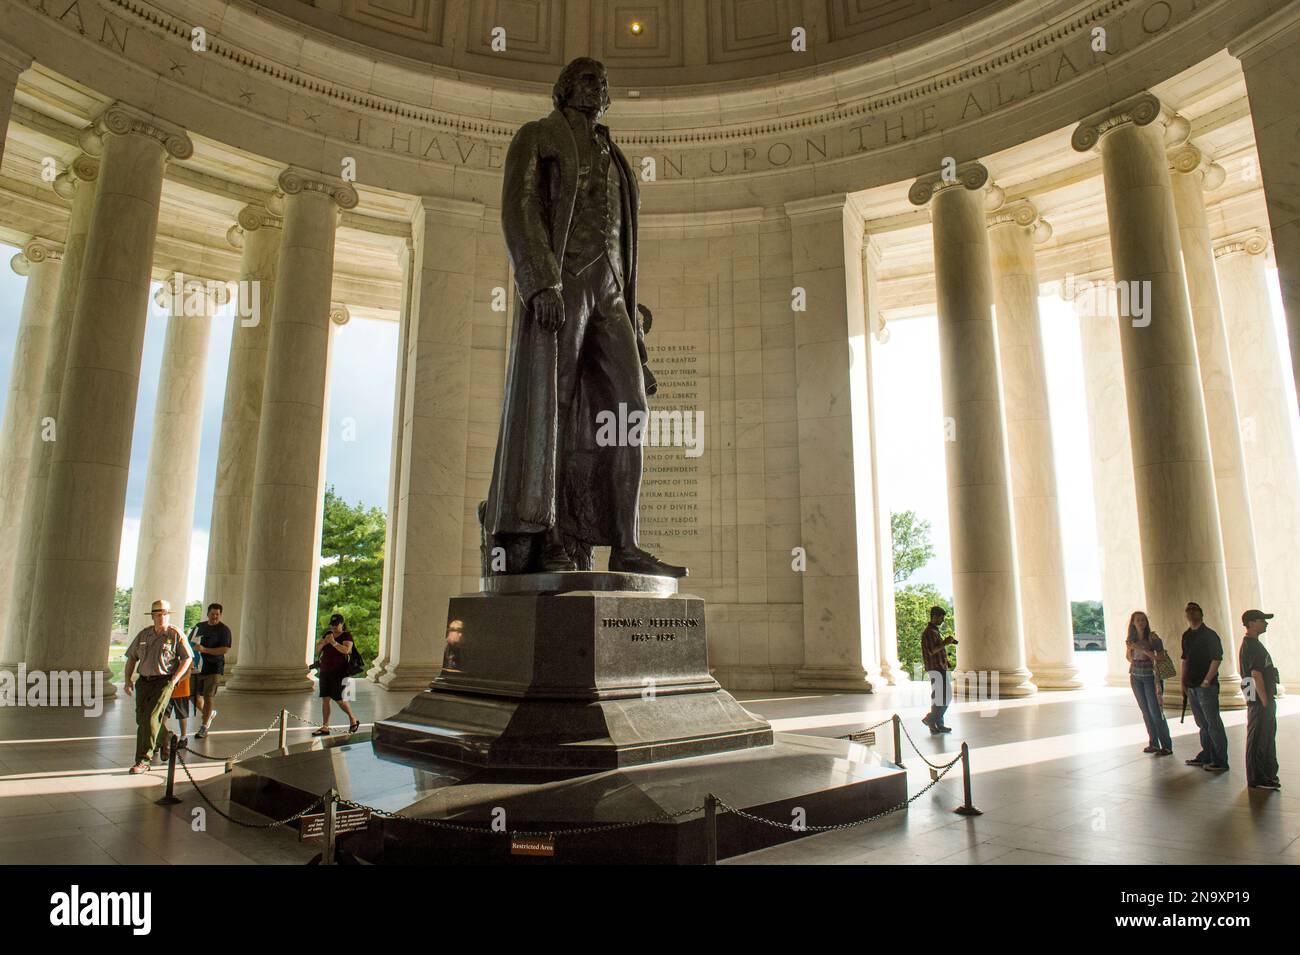 Jefferson Memorial dans le district de Columbia, Washington, États-Unis ; Washington, district de Columbia, États-Unis d'Amérique Banque D'Images